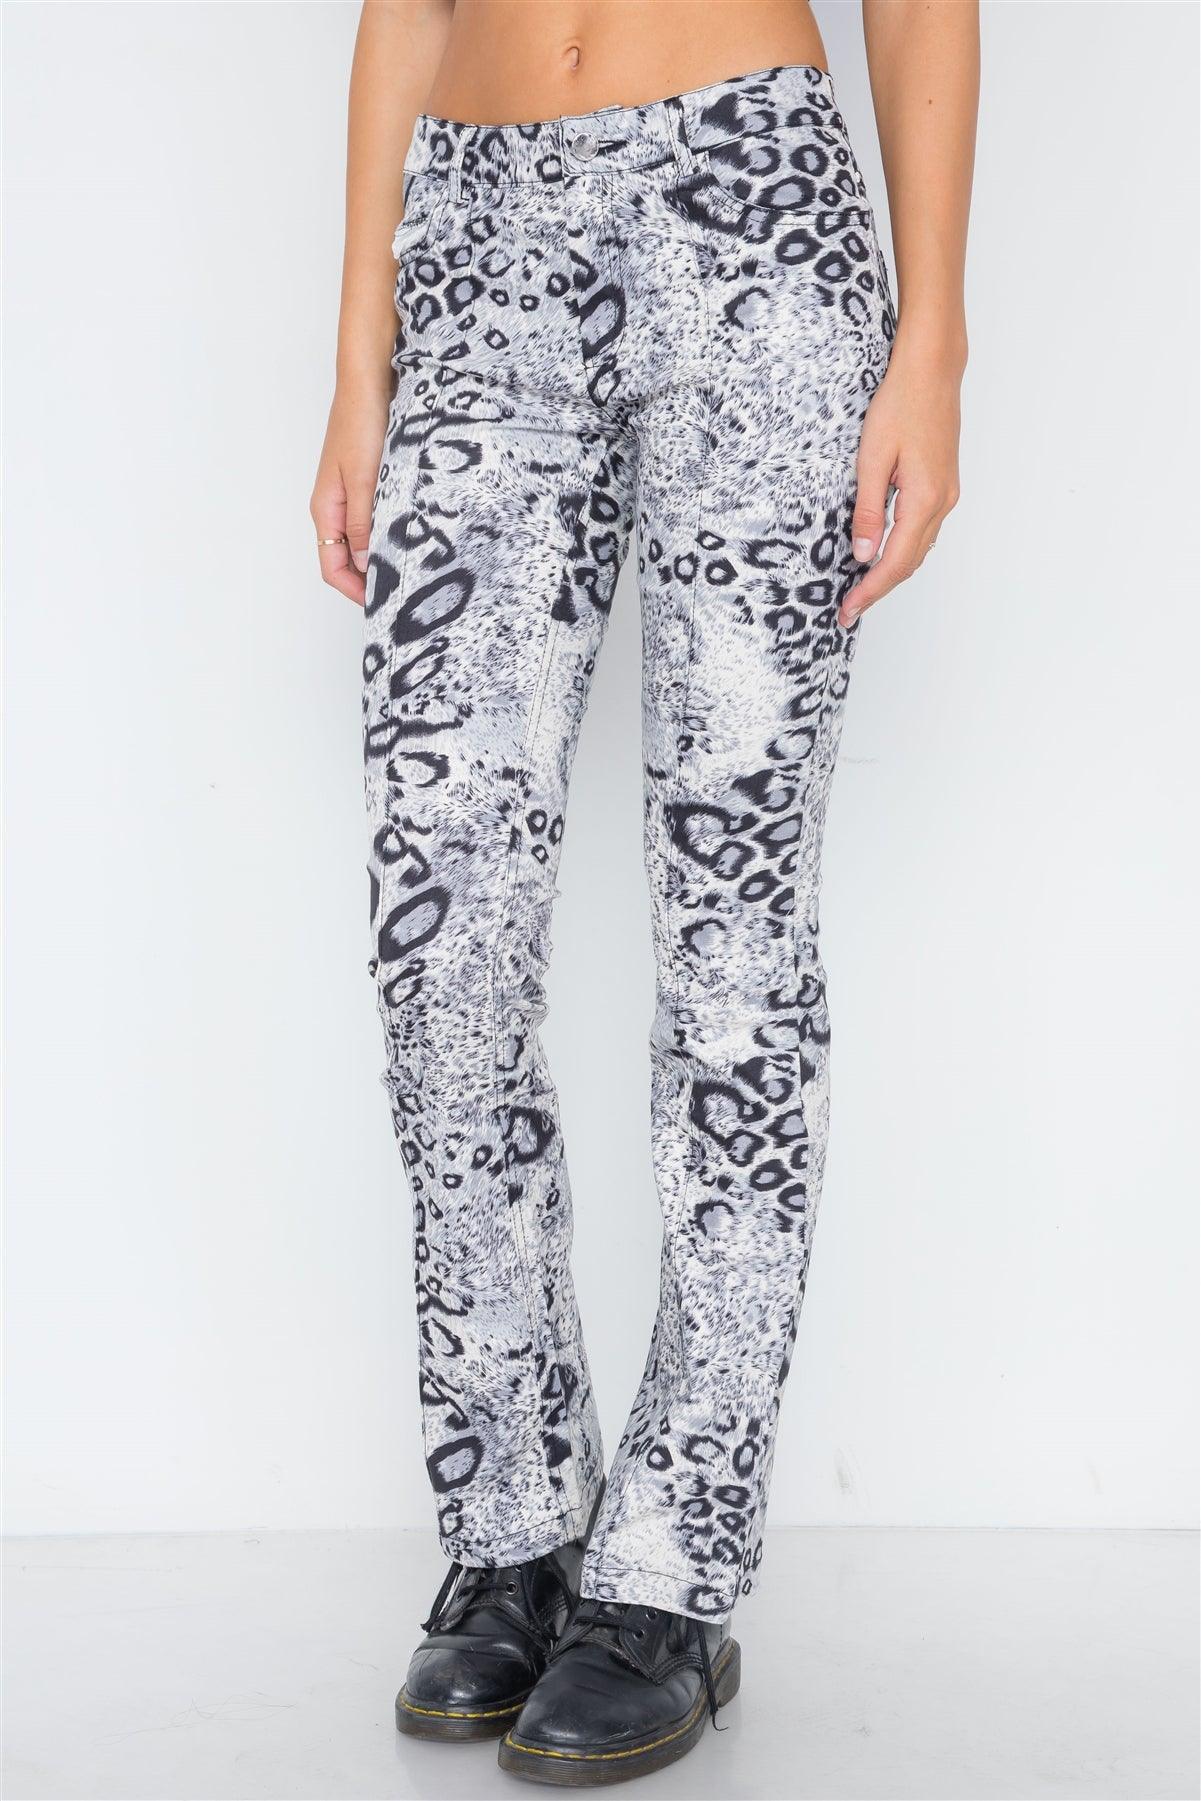 Grey Animal Print Flare Pants /2-2-2-2-1